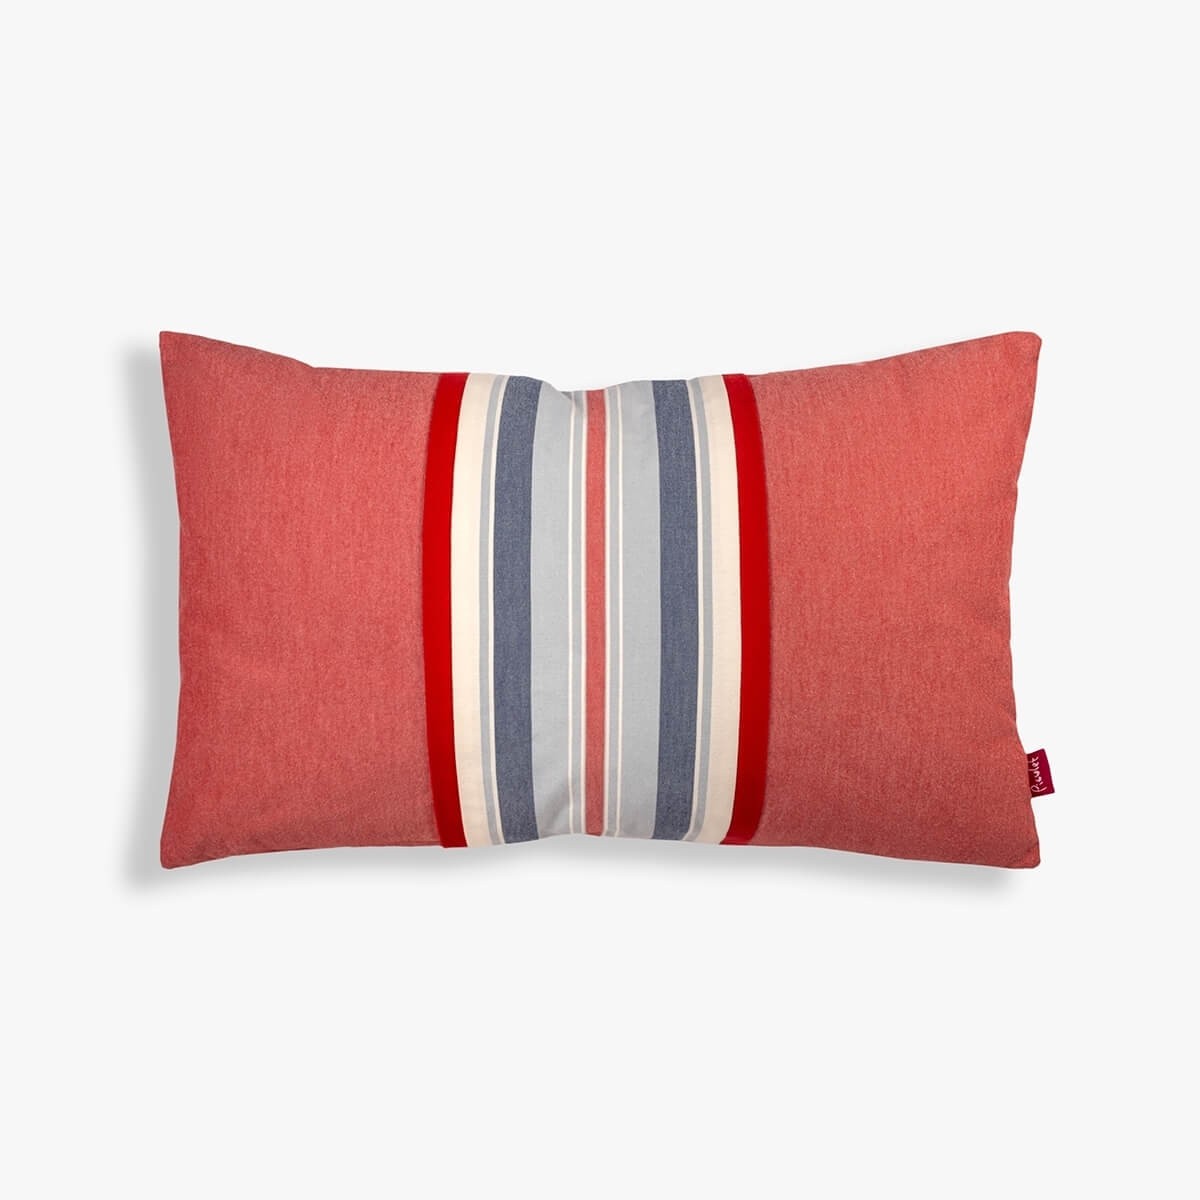 Raitakuvioitu punasävyinen tyynynpäällinen main variant image